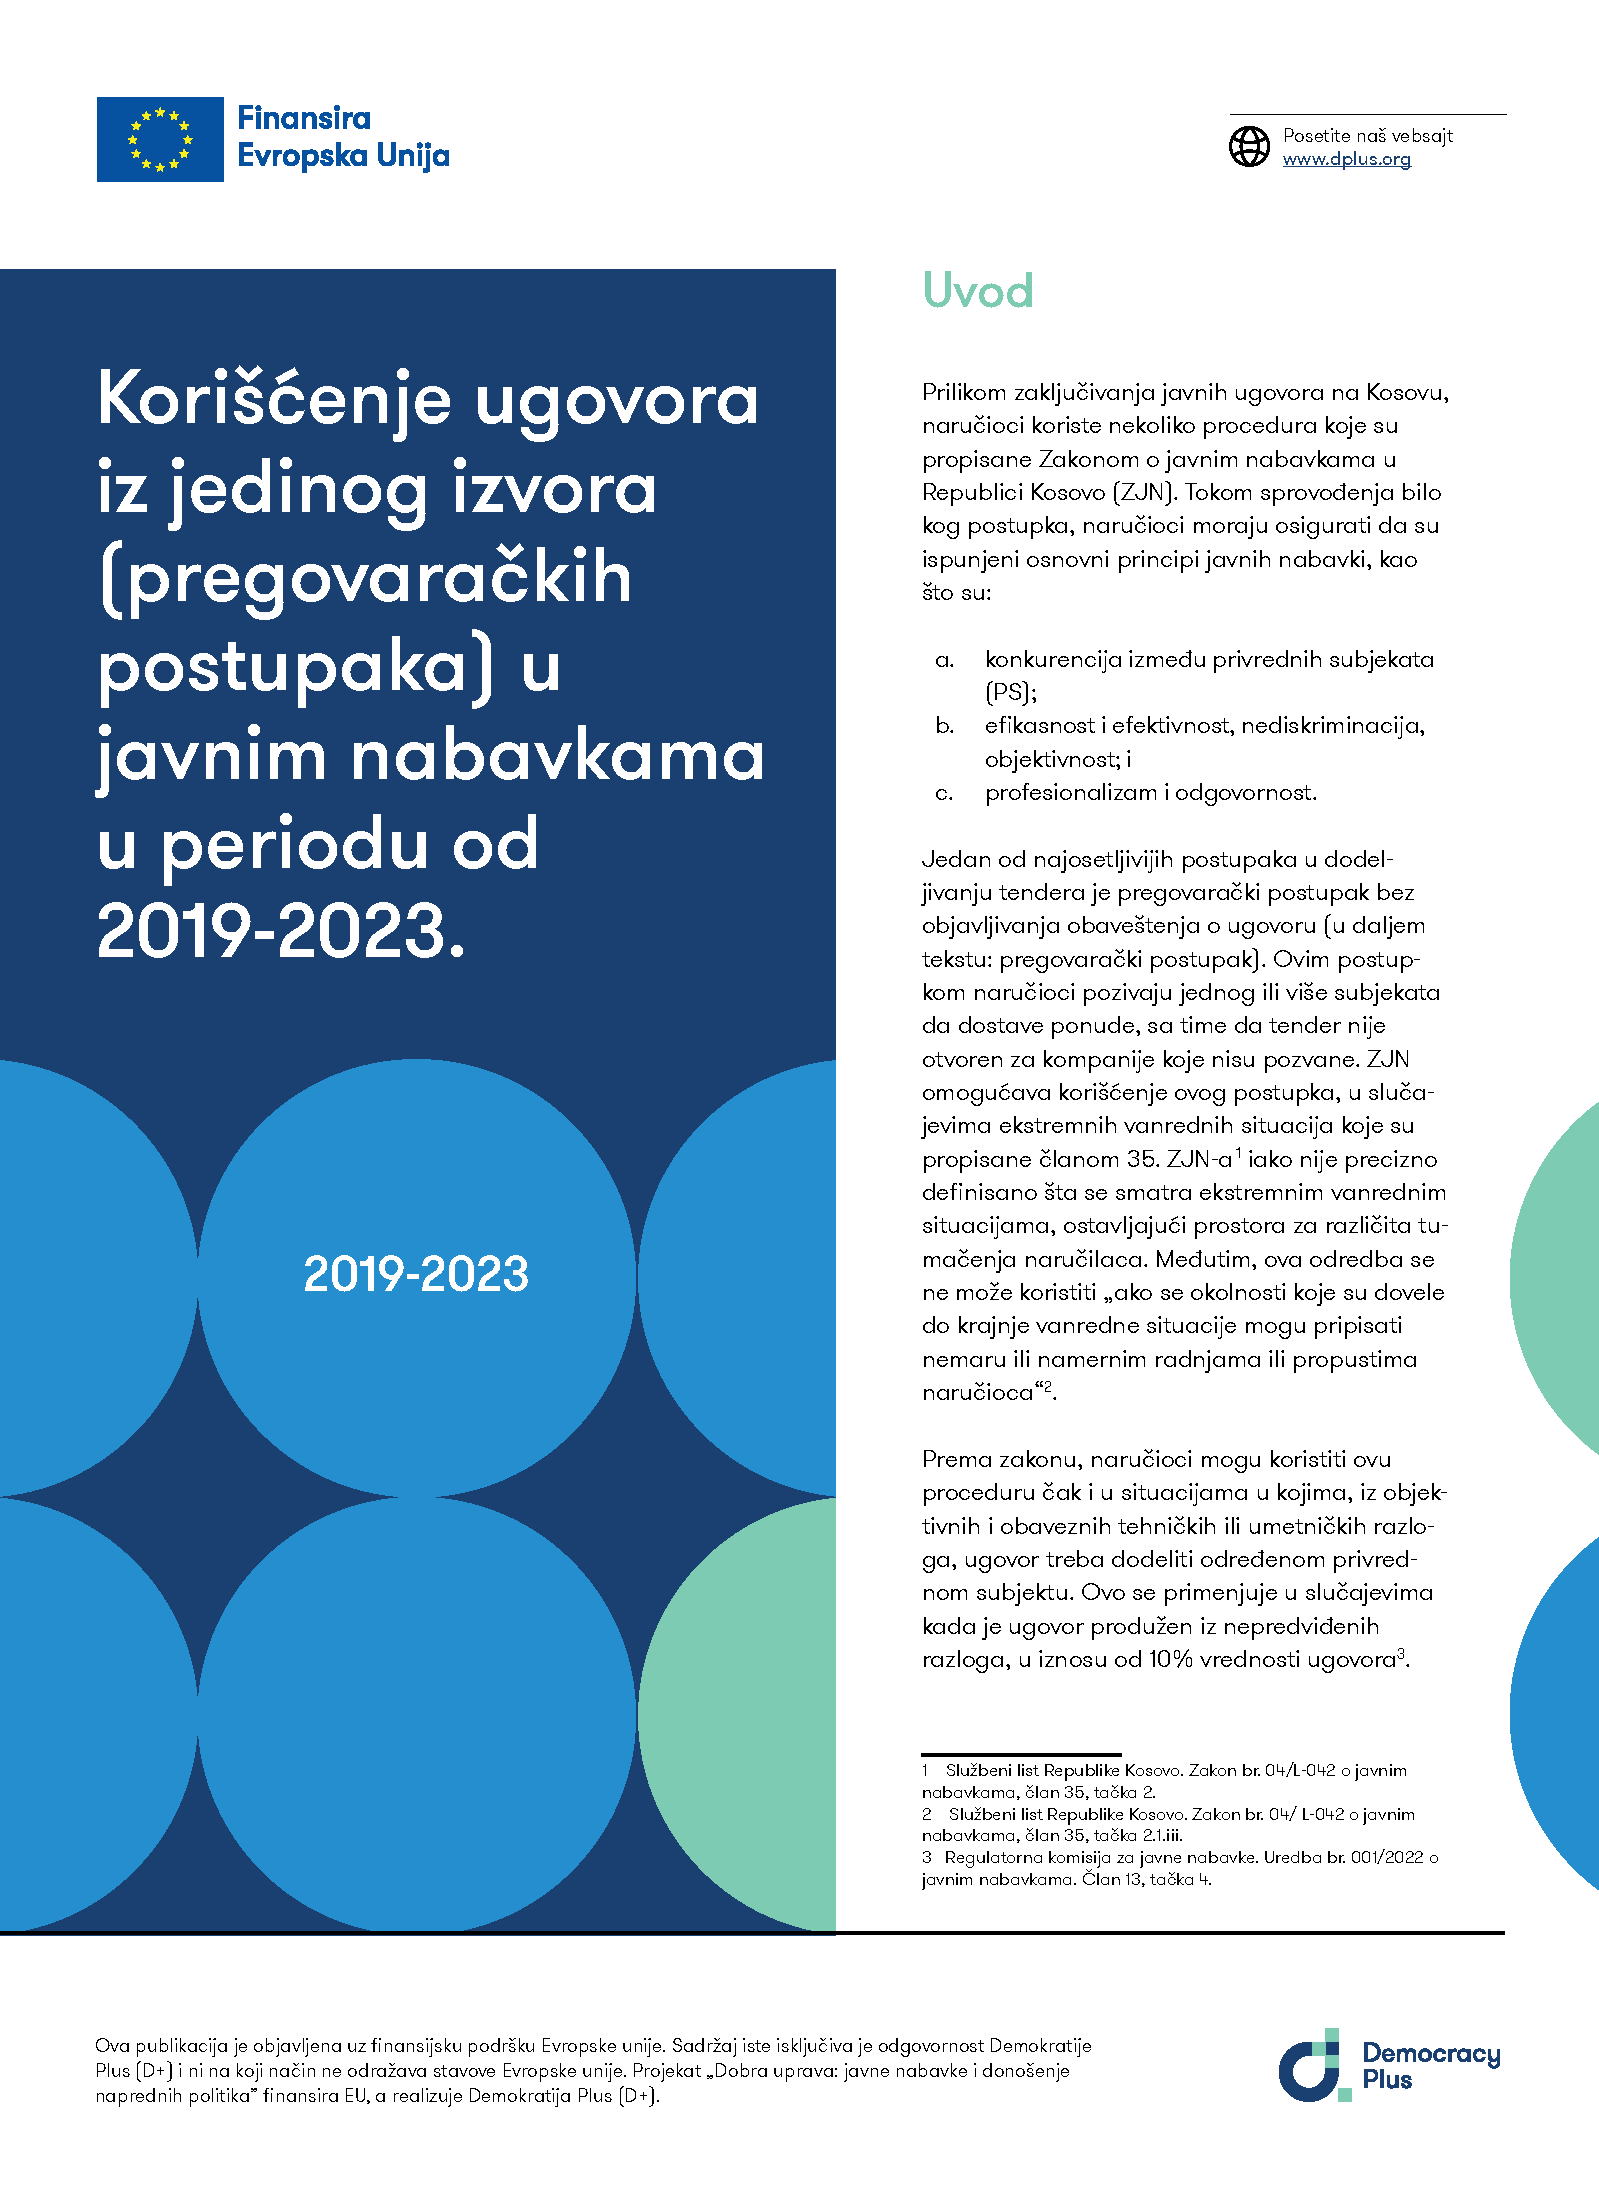 Korišćenje ugovora iz jedinog izvora (pregovaračkih postupaka) u javnim nabavkama u periodu od 2019-2023